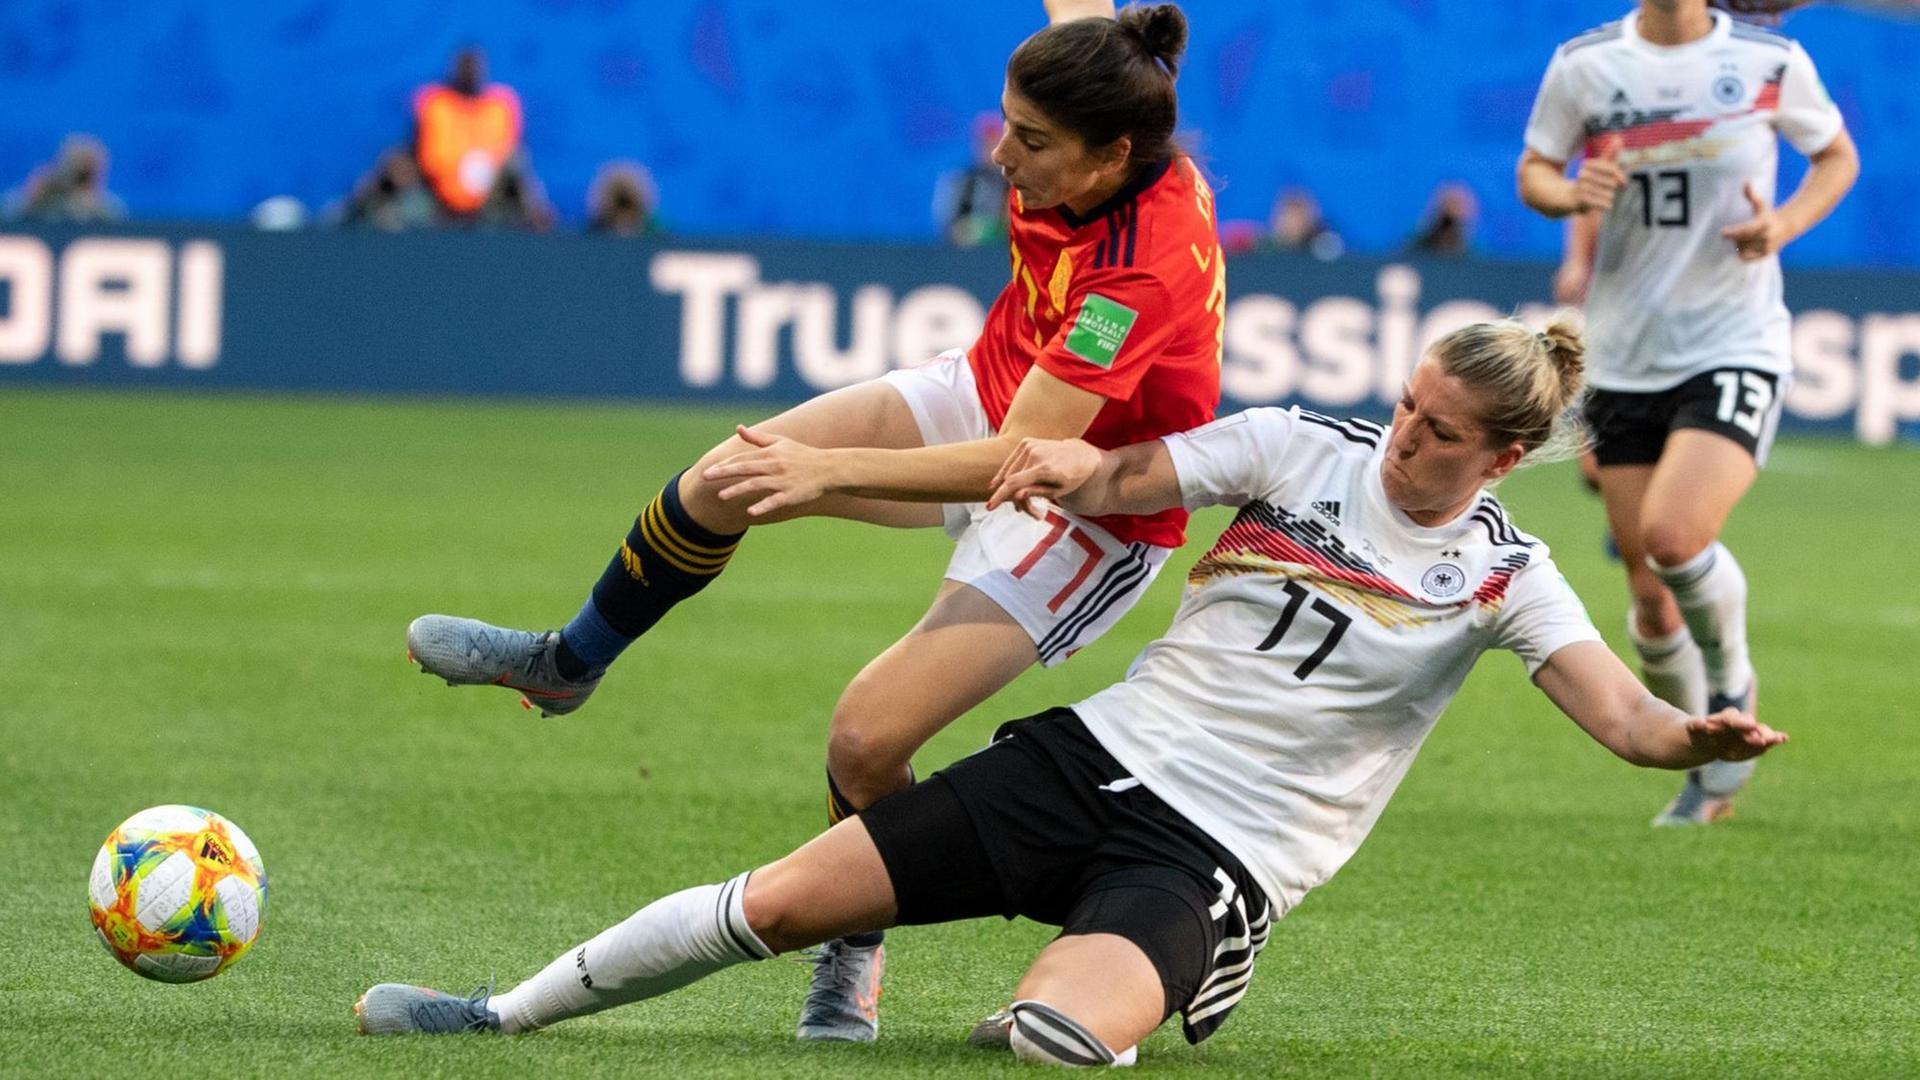 Die deutsche National-Spielerin Verena Schweers im Zwei-Kampf um den Ball.